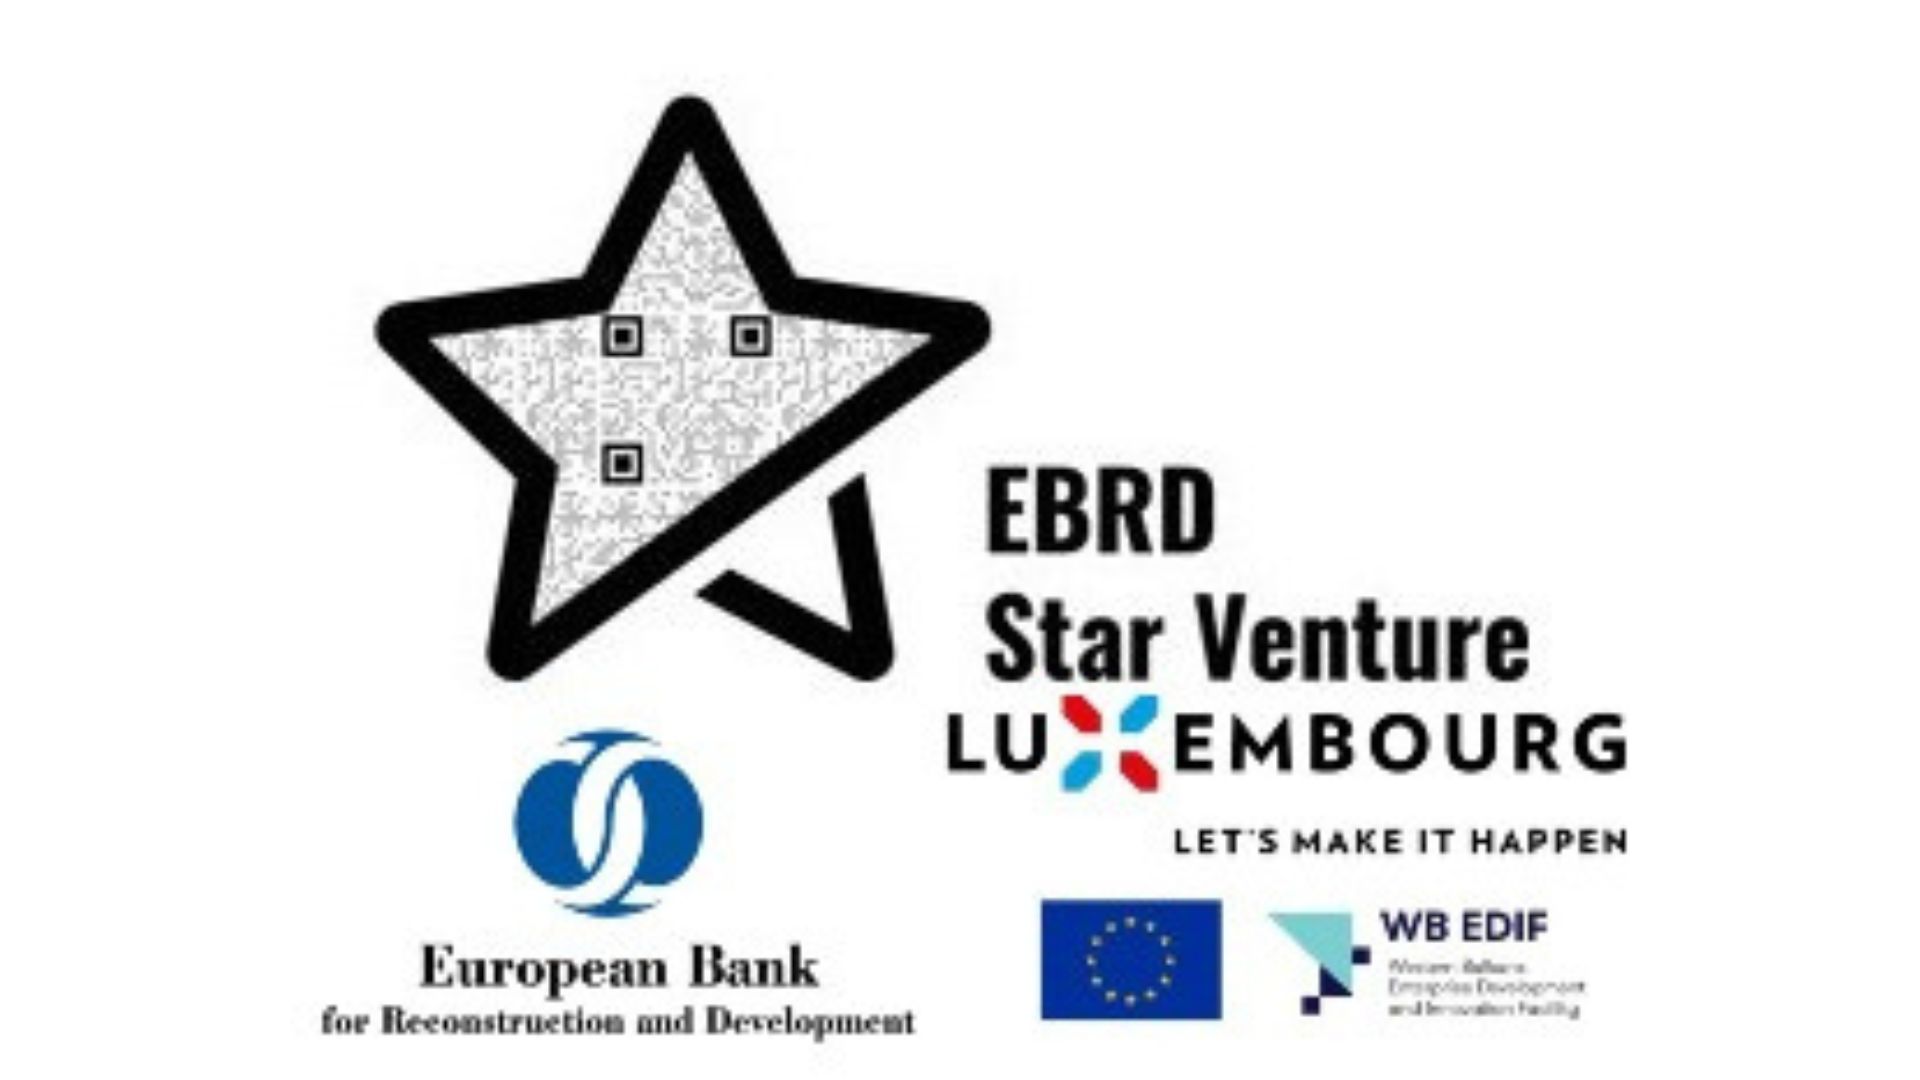 EBRD Star Venture program